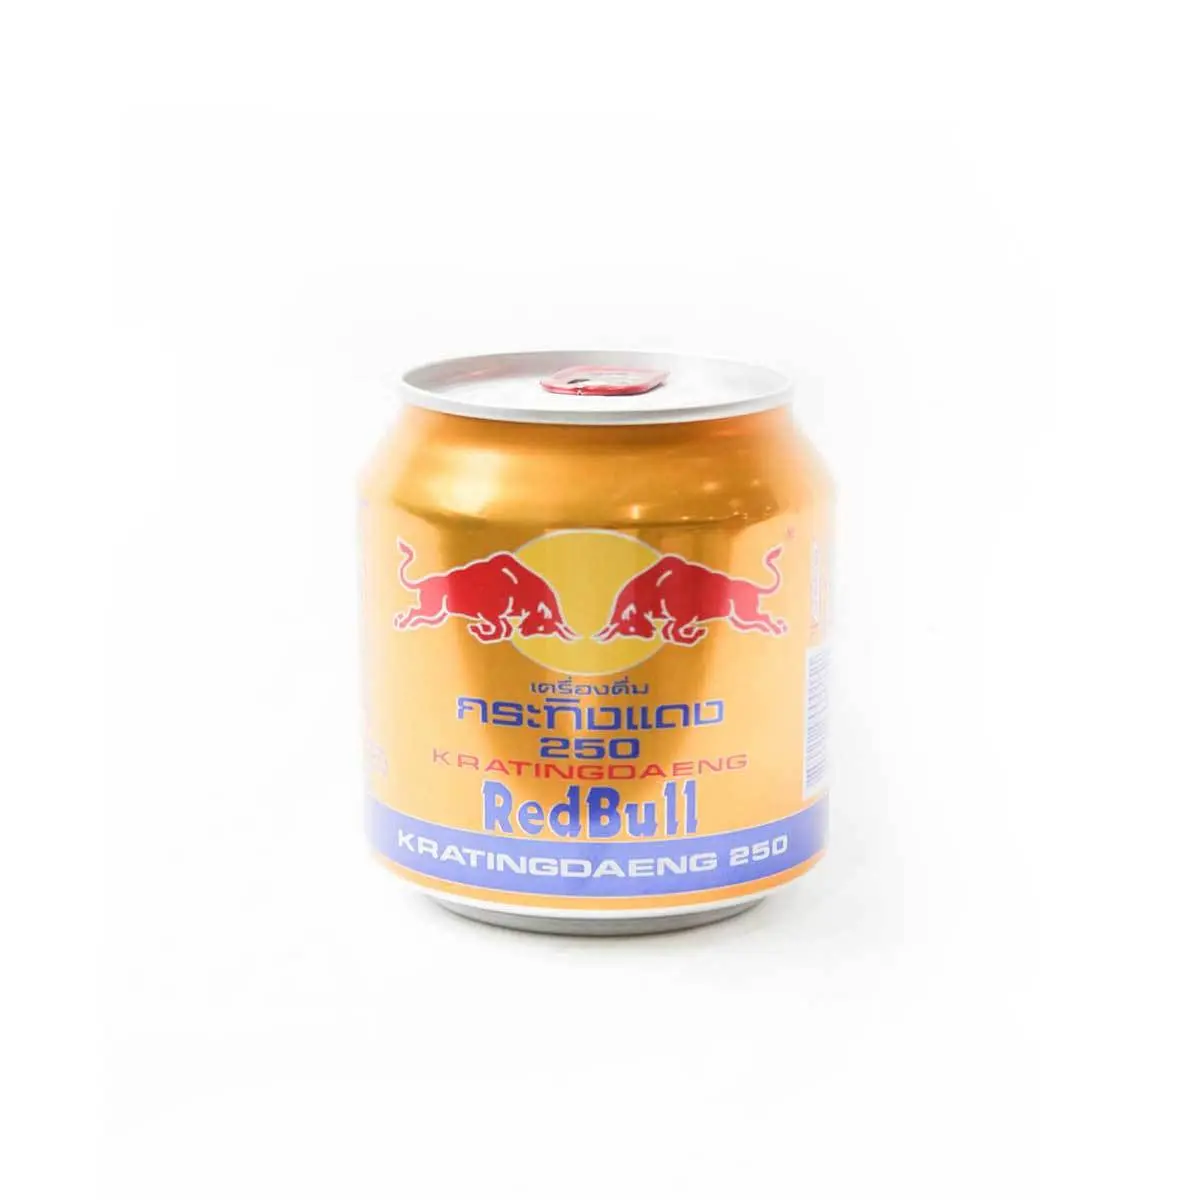 Red Bull Thai 250ml - Buy Asian Drinks Online / Sport Drink / Energy Drink  | SSLH08